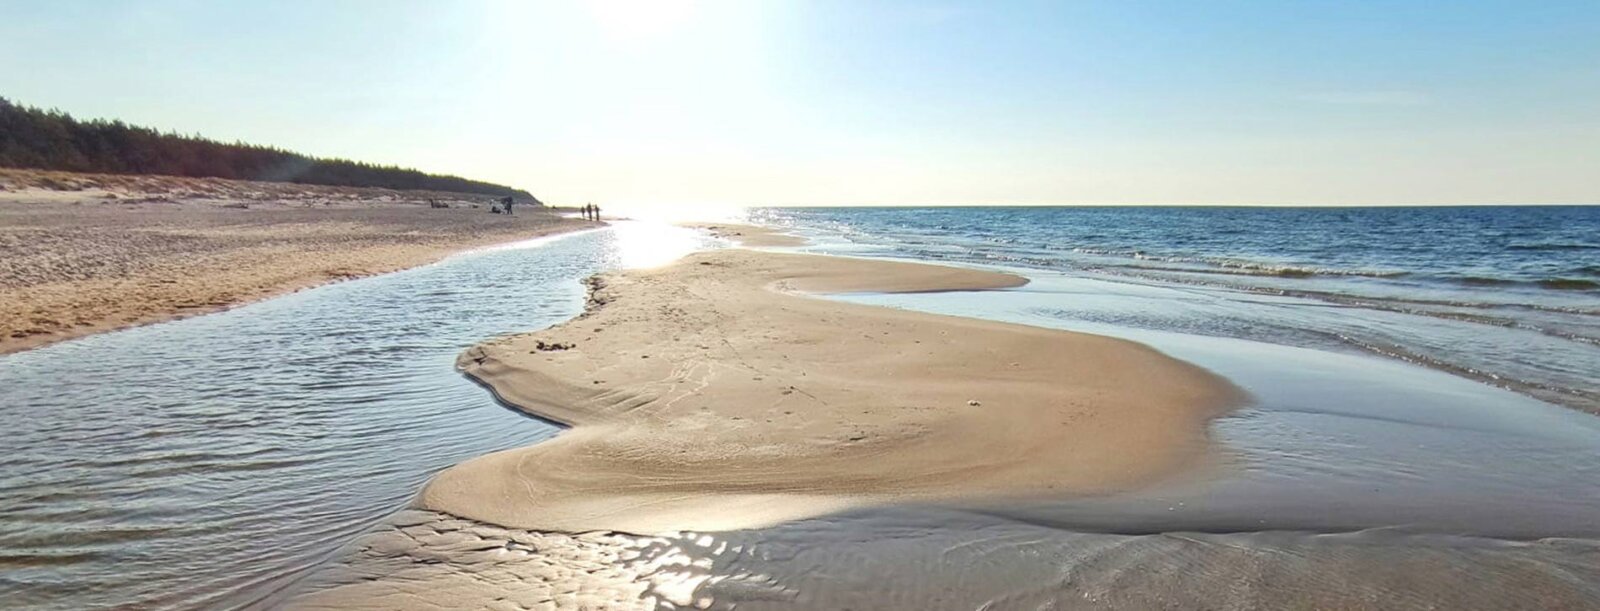 morze w Kołobrzegu - piękna plaża